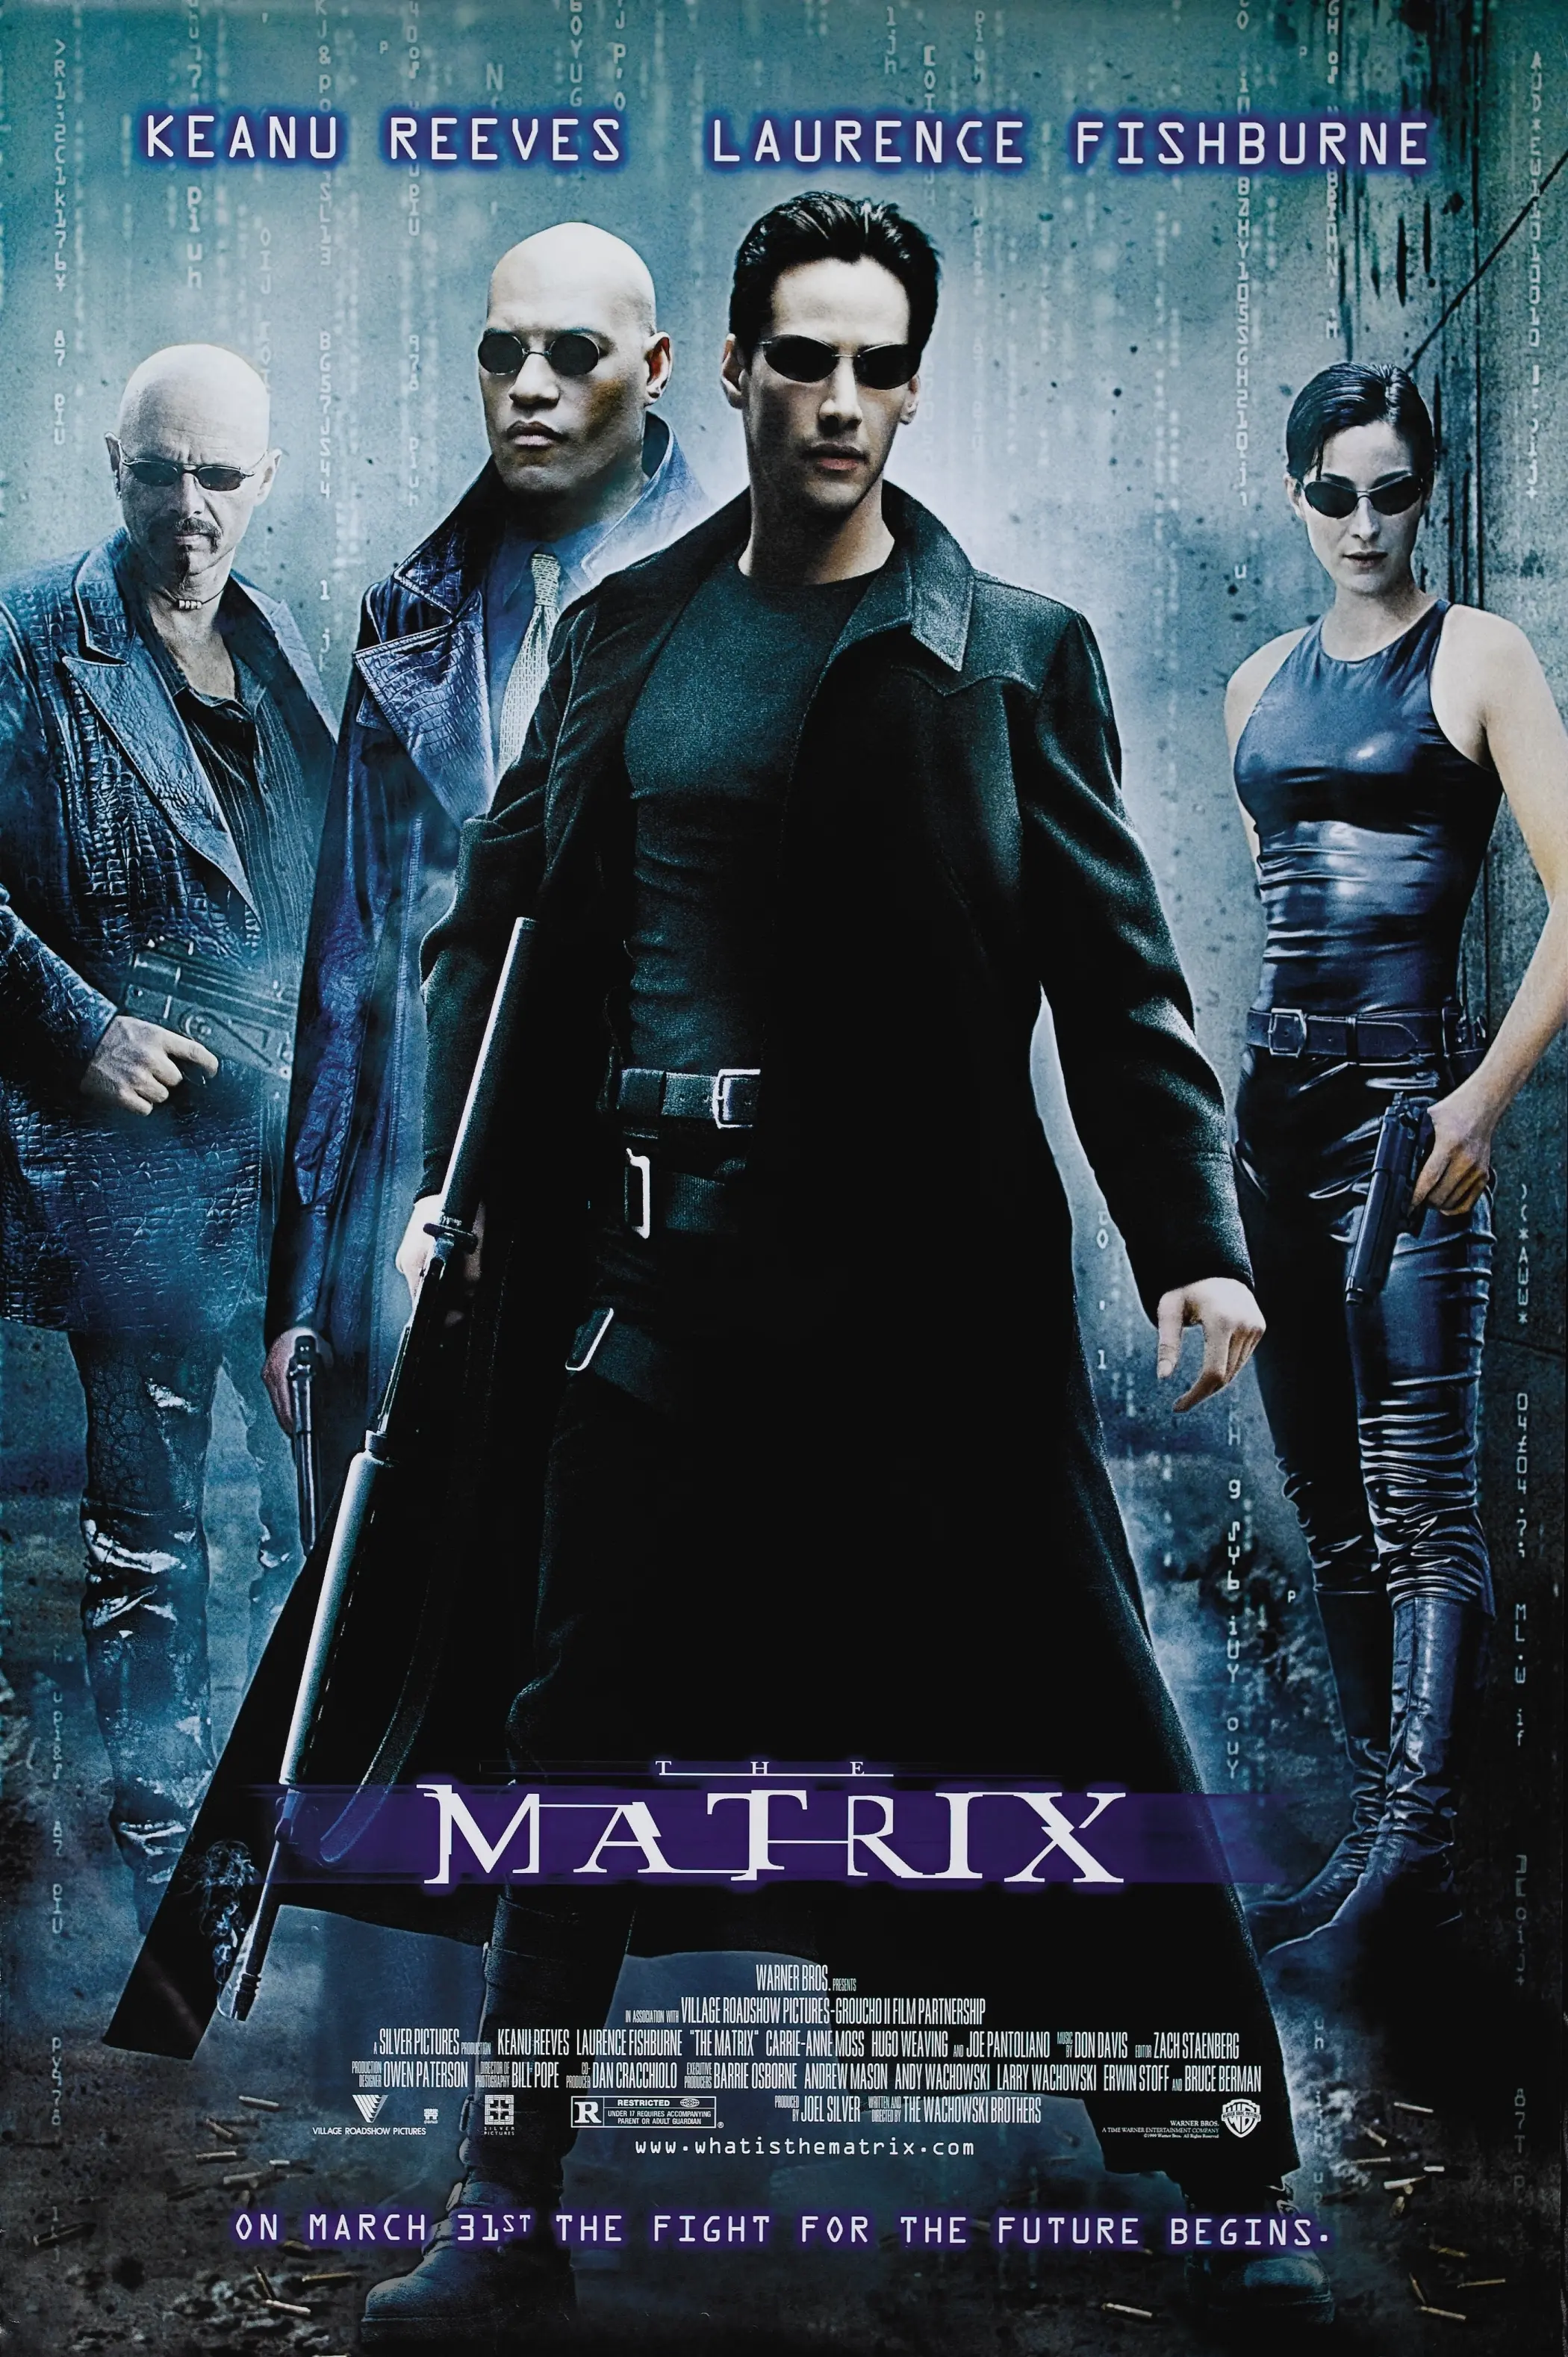 nejlepsi-filmy-roku-1999-aneb-vzpominka-na-dobu-kdy-prisel-do-kin-matrix-7